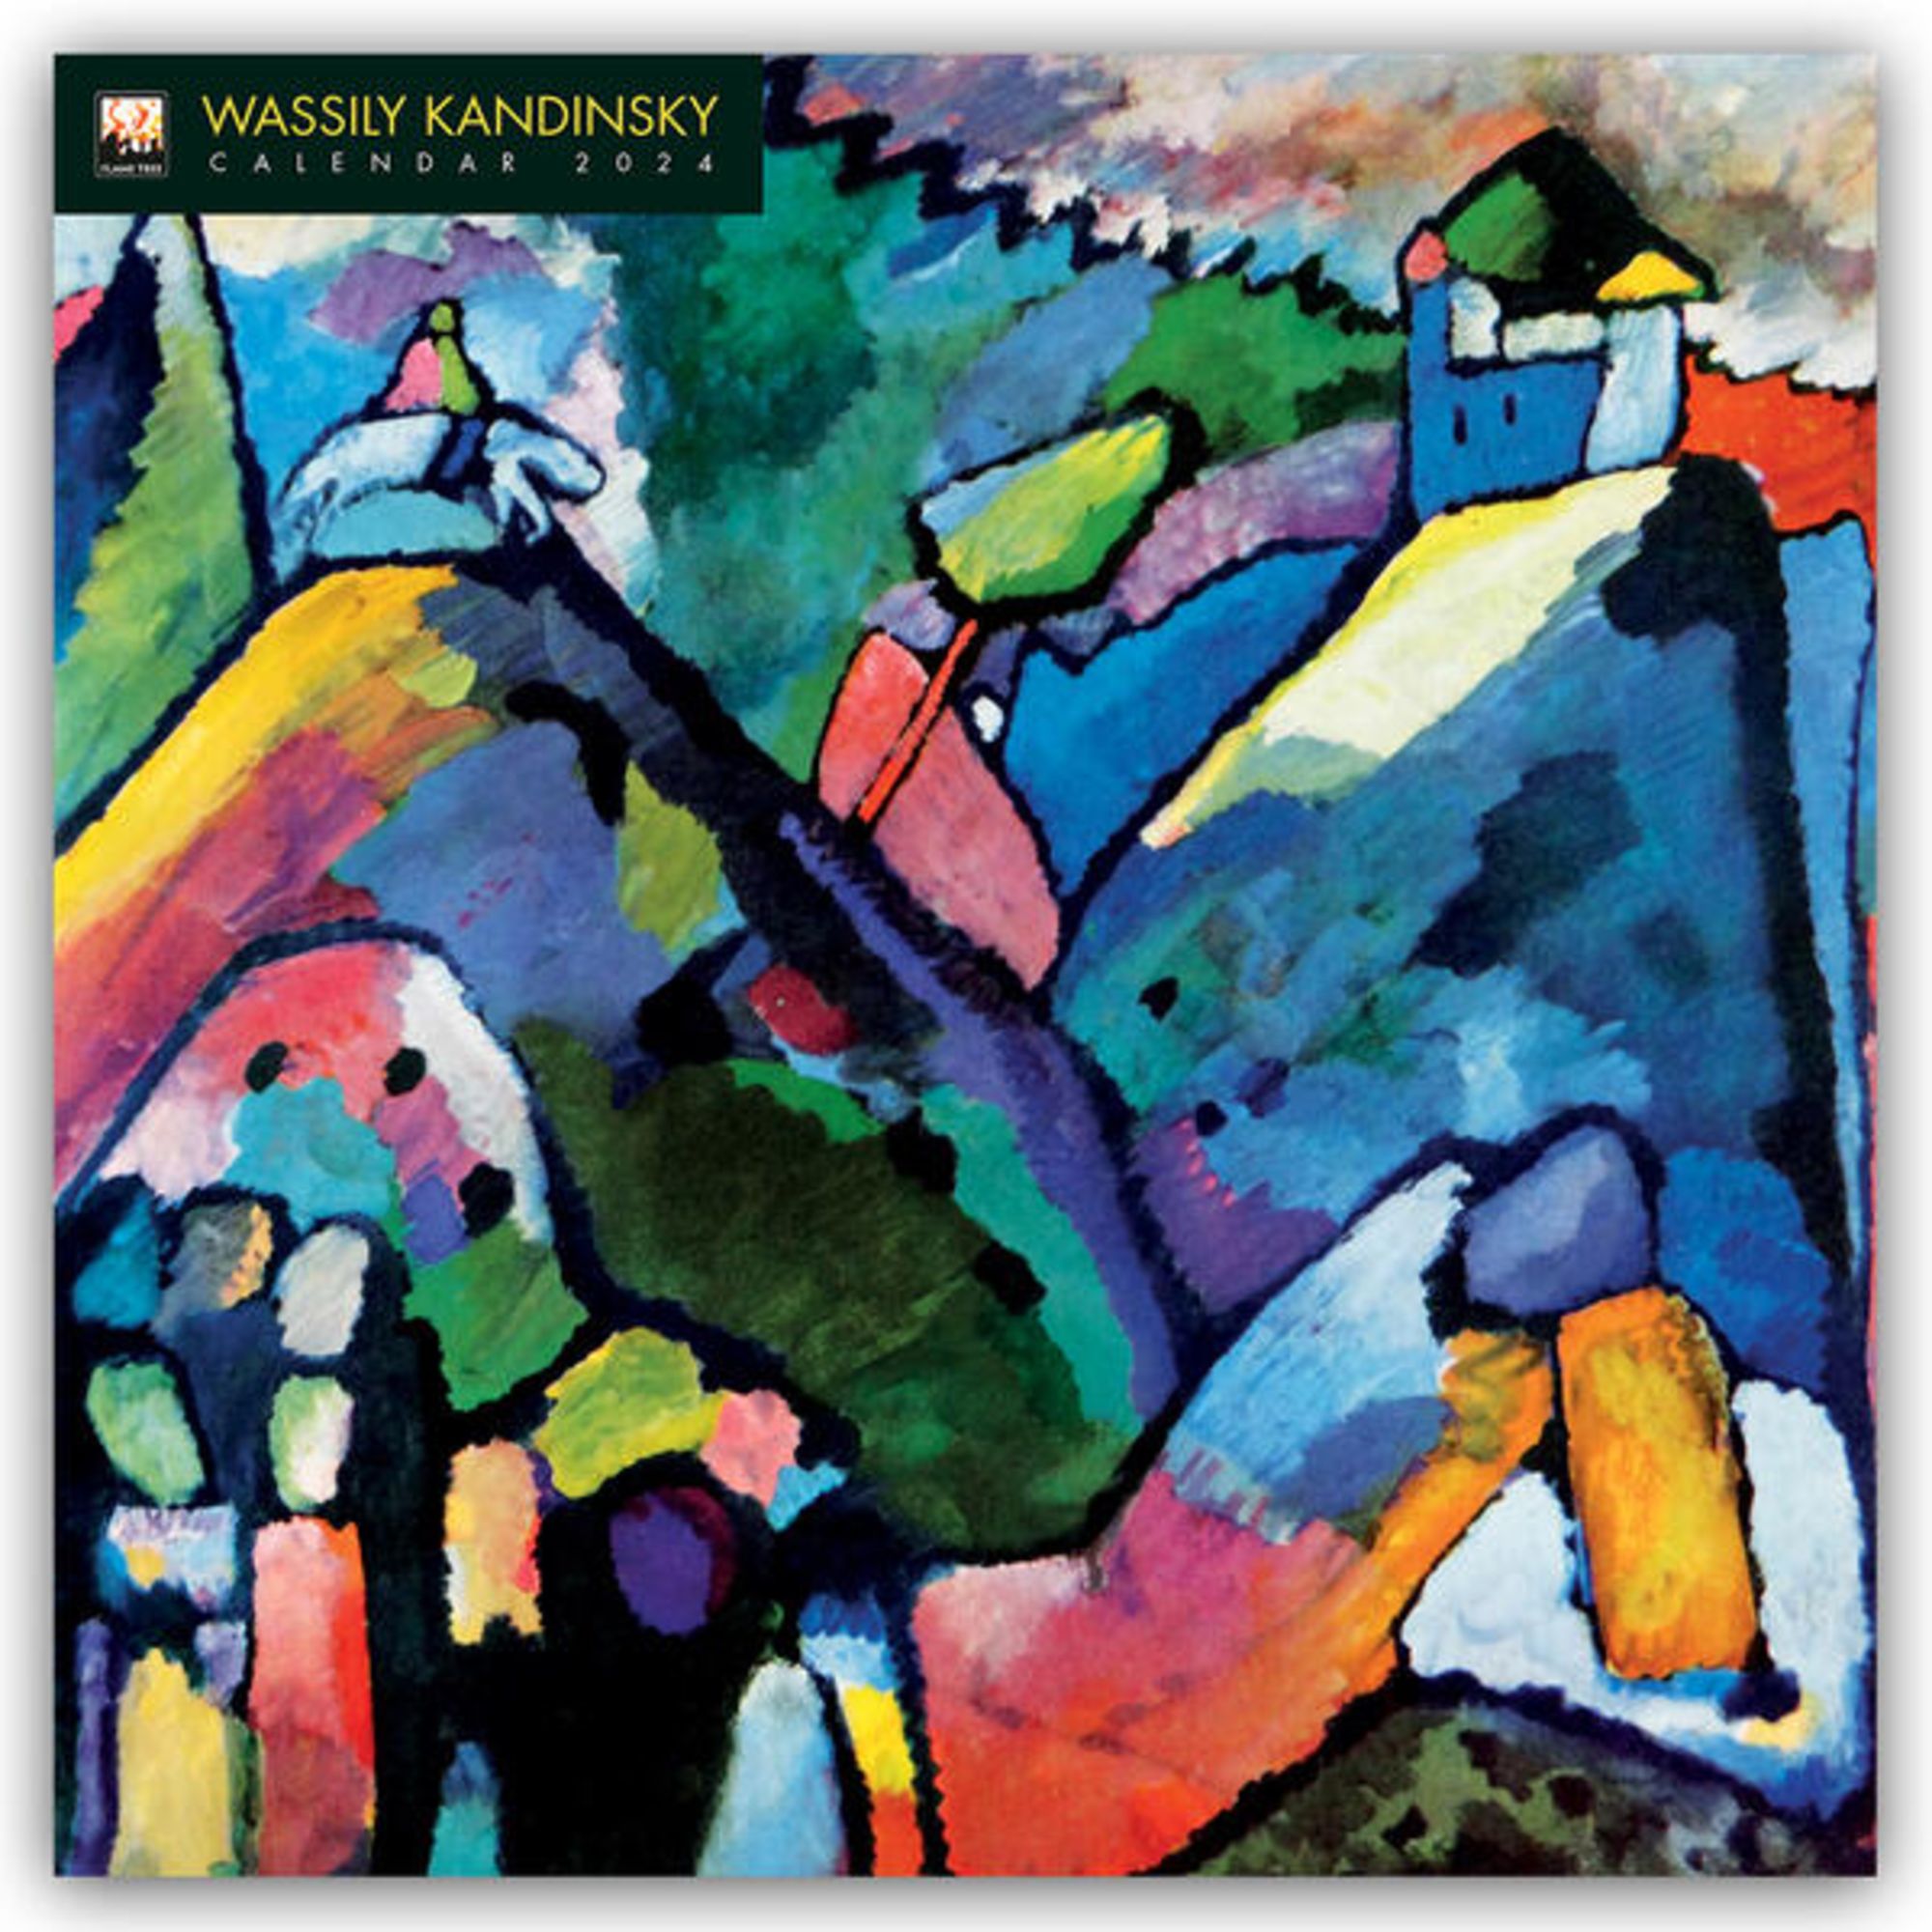 Wassily Kandinsky、AUS DER TIEFE